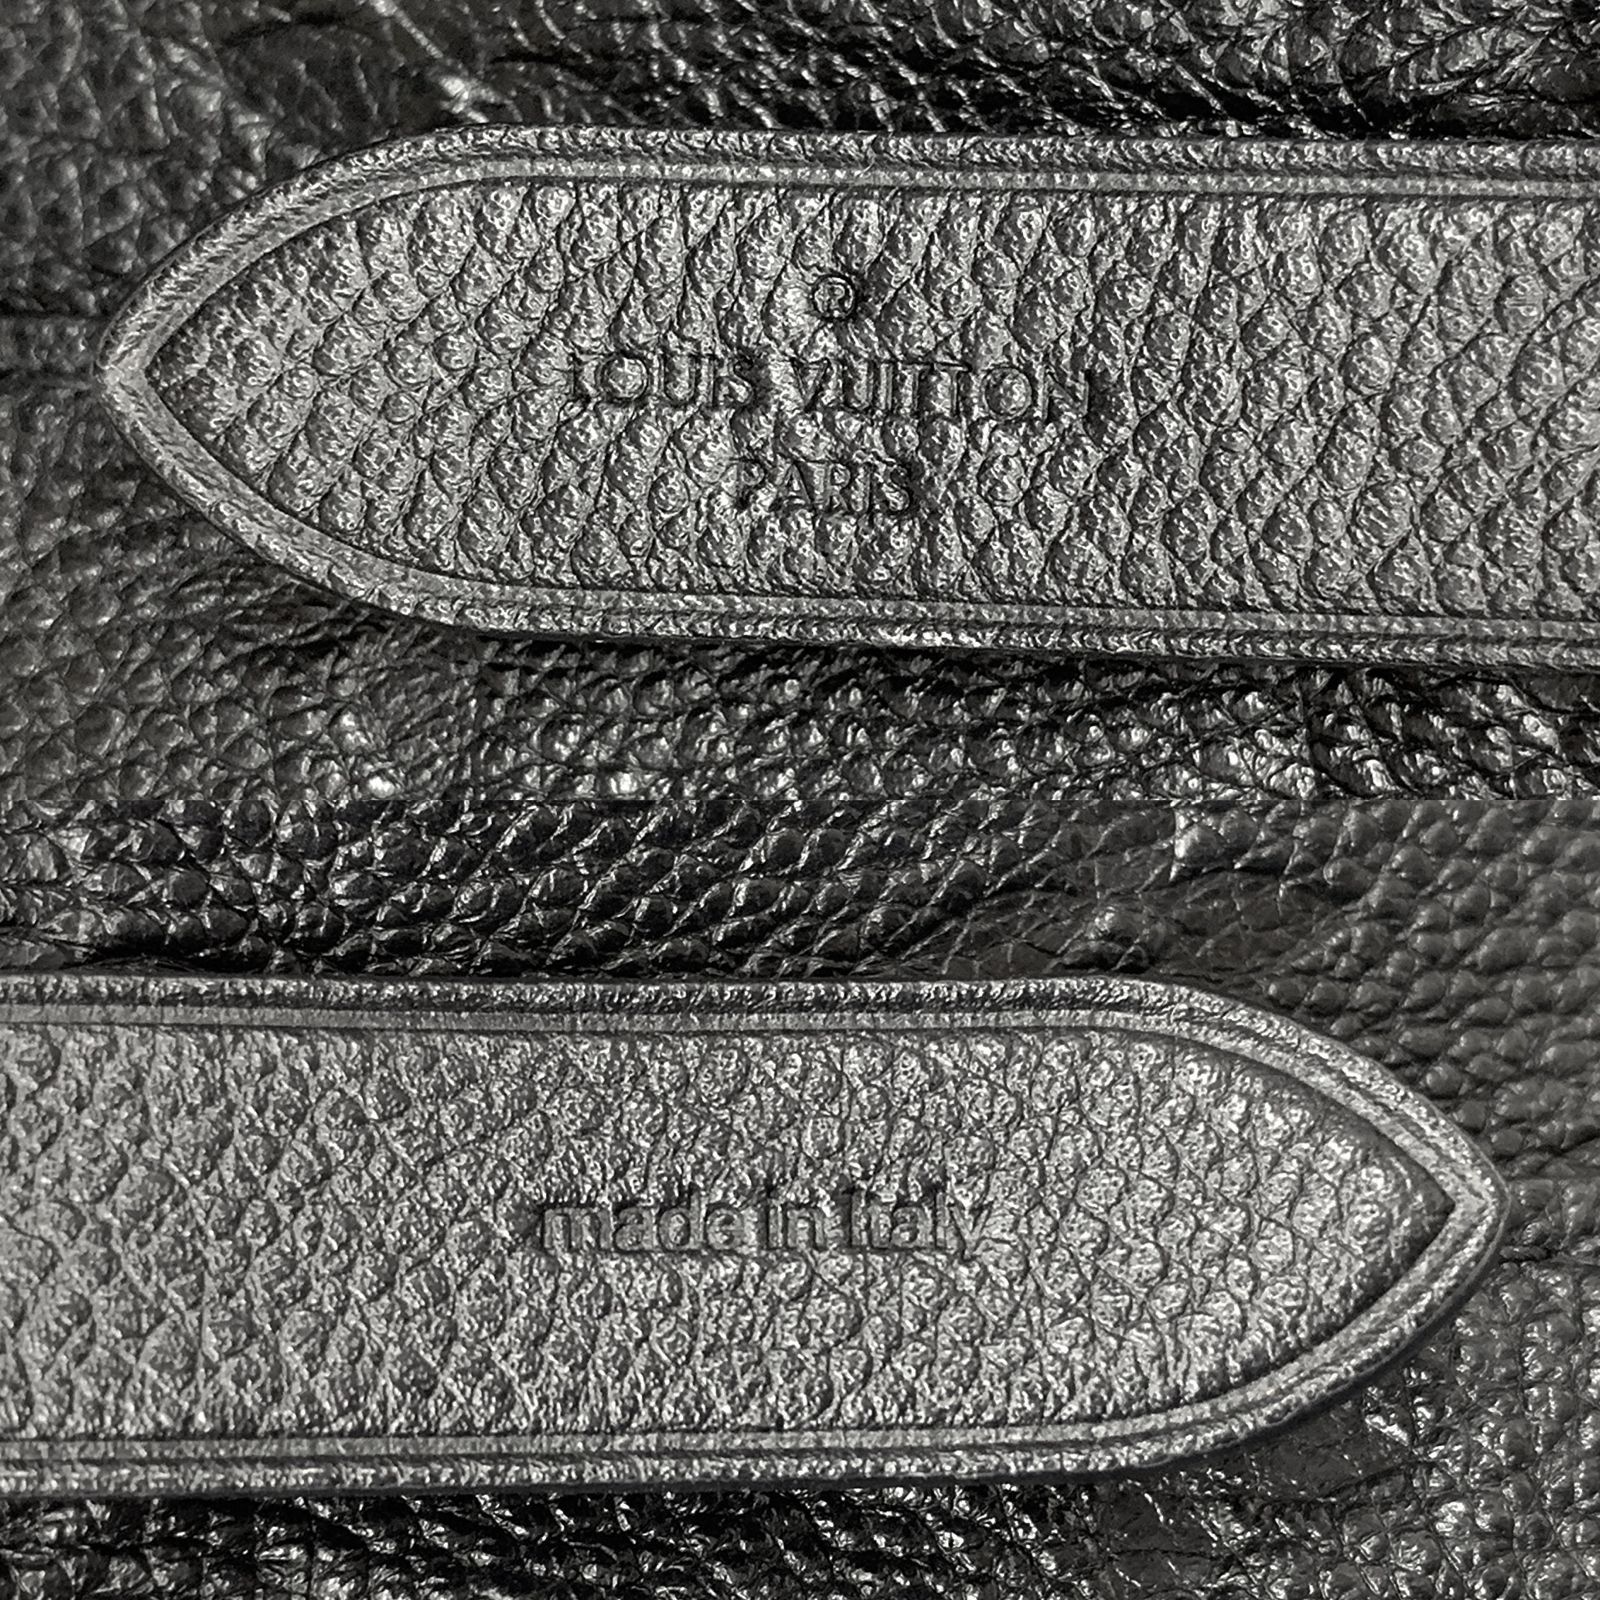  Louis Vuitton M45256 Monogram Empreinte Neonoe Noir Shoulder  Bag Handbag [Parallel Import], noir : Clothing, Shoes & Jewelry